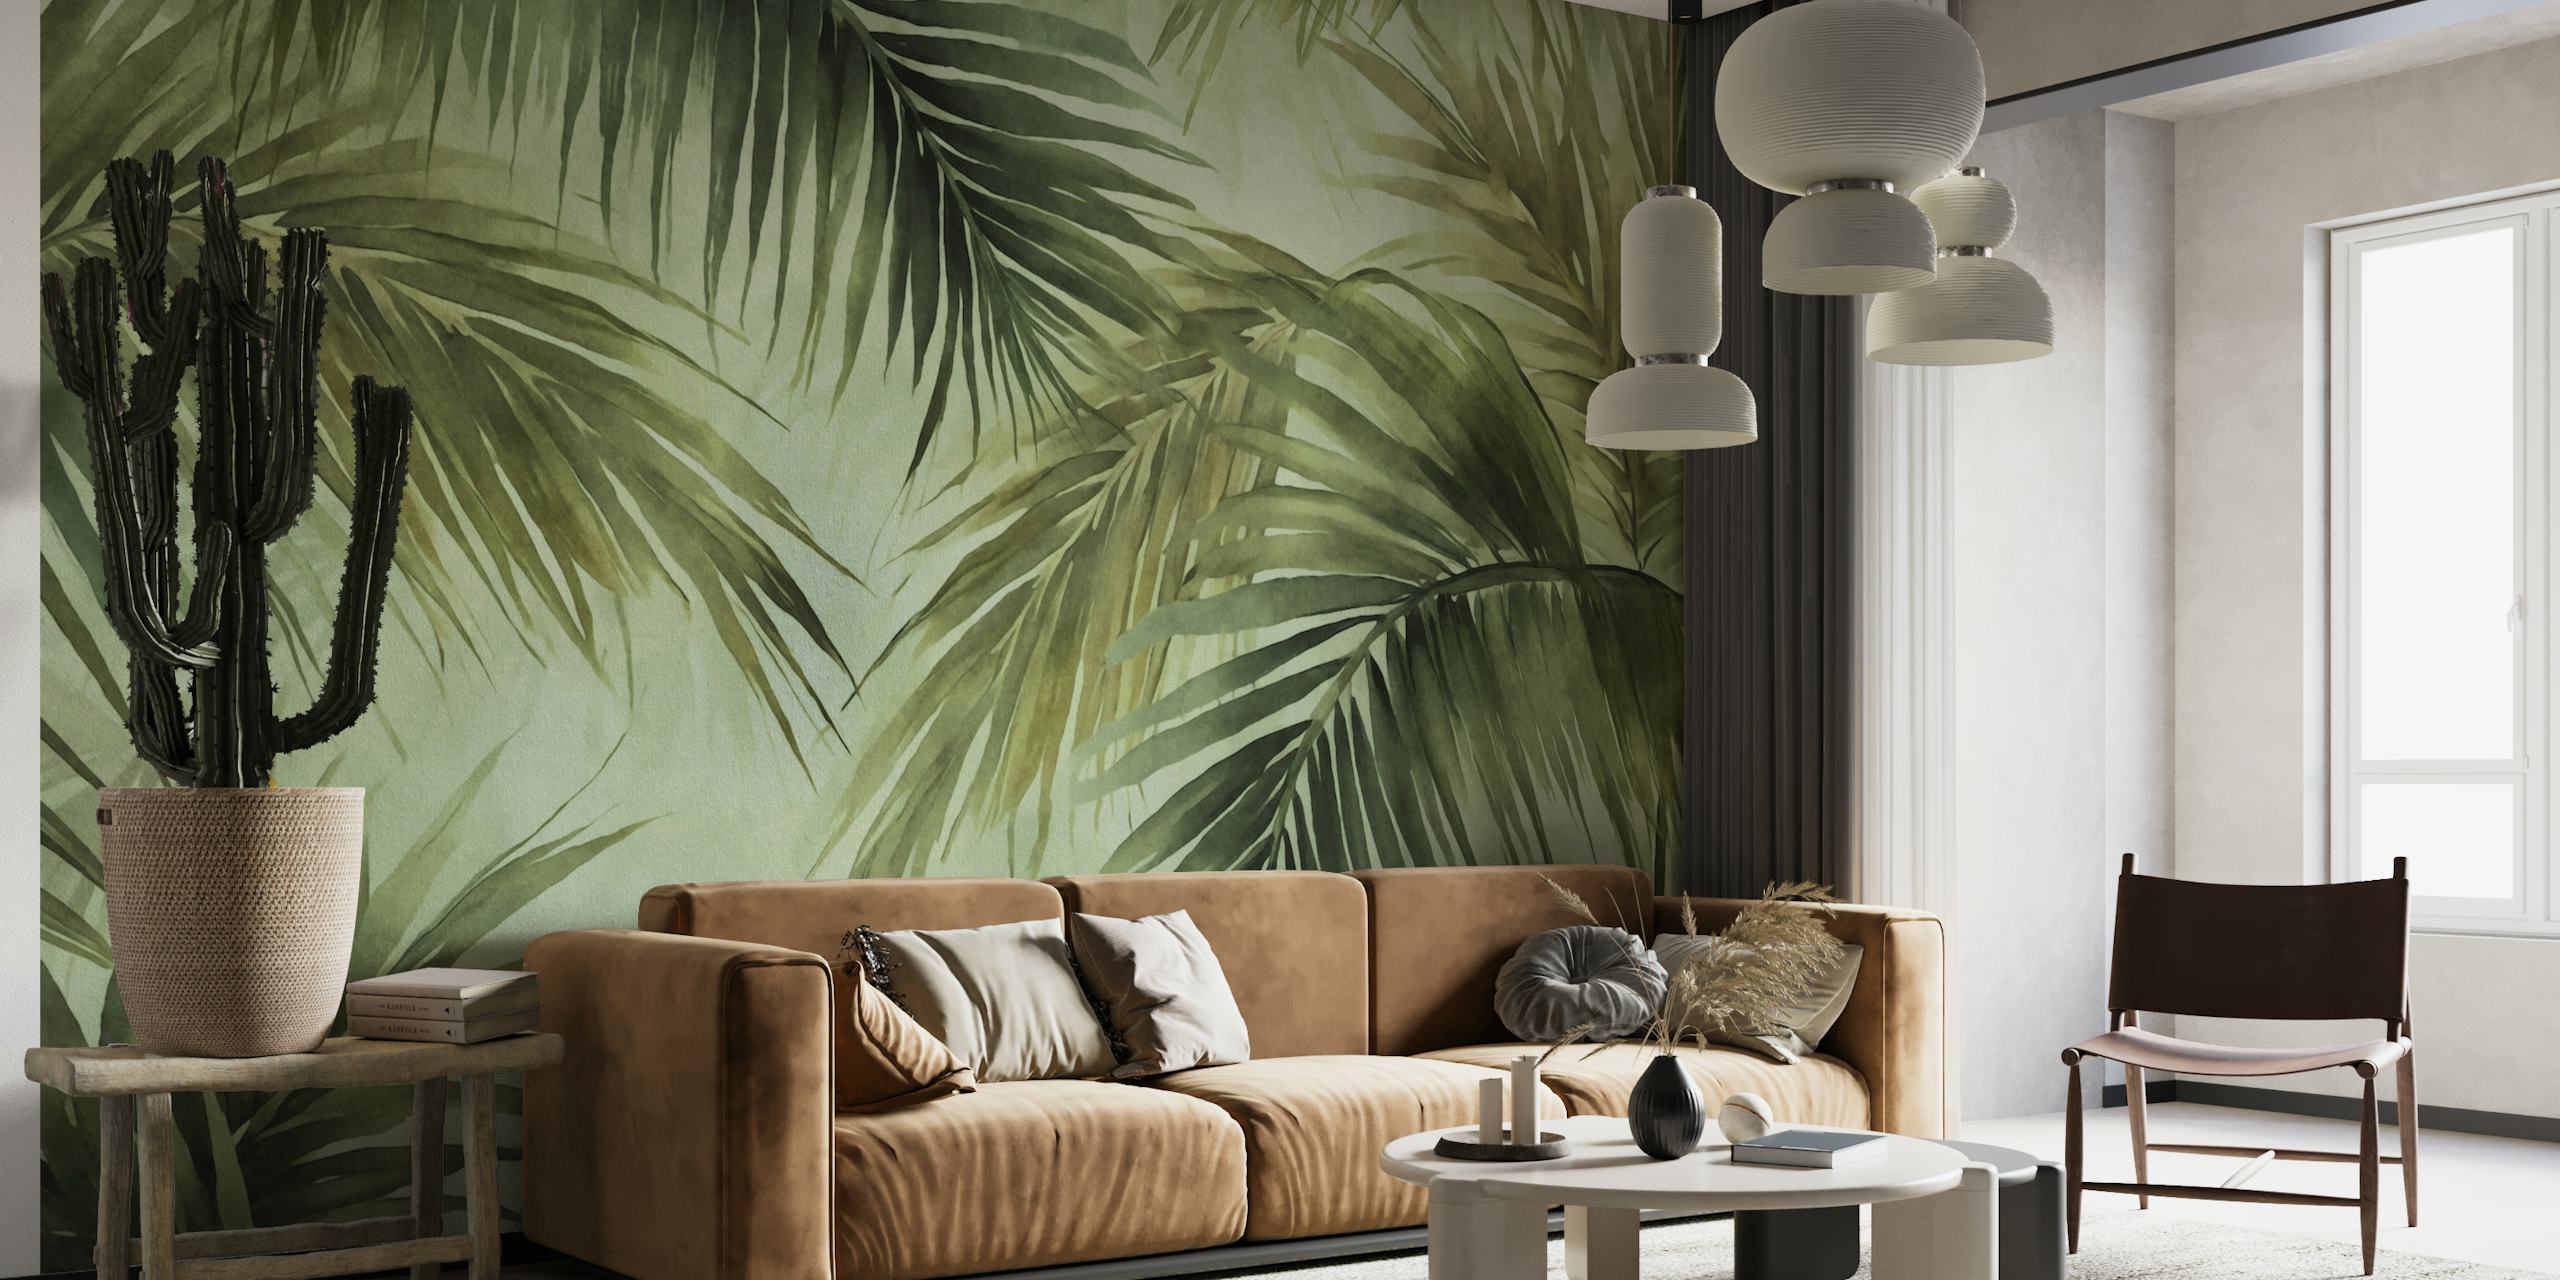 Mural de folhas de palmeira em aquarela em tons temperamentais, perfeito para criar um ambiente de ilha tropical.